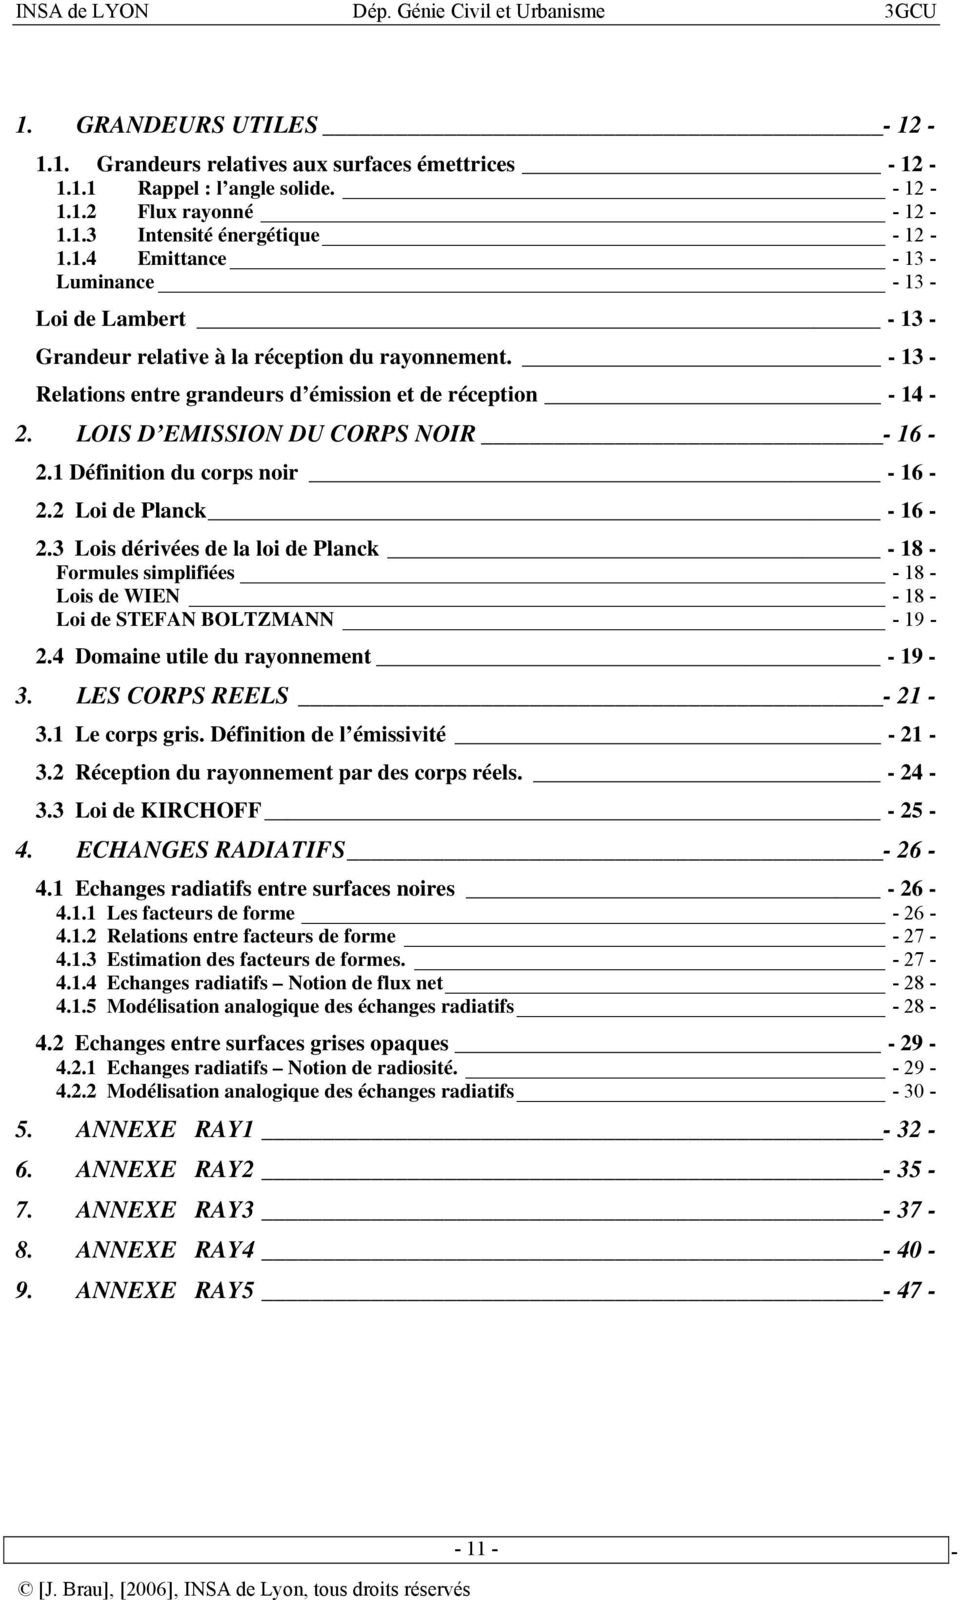 3 Lois dérivées de la loi de Planck - 18 Formules simplifiées - 18 Lois de WIEN - 18 Loi de STEFAN BOLTZMANN - 19 2.4 Domaine utile du rayonnement - 19 3. LES CORPS REELS - 21 3.1 Le corps gris.